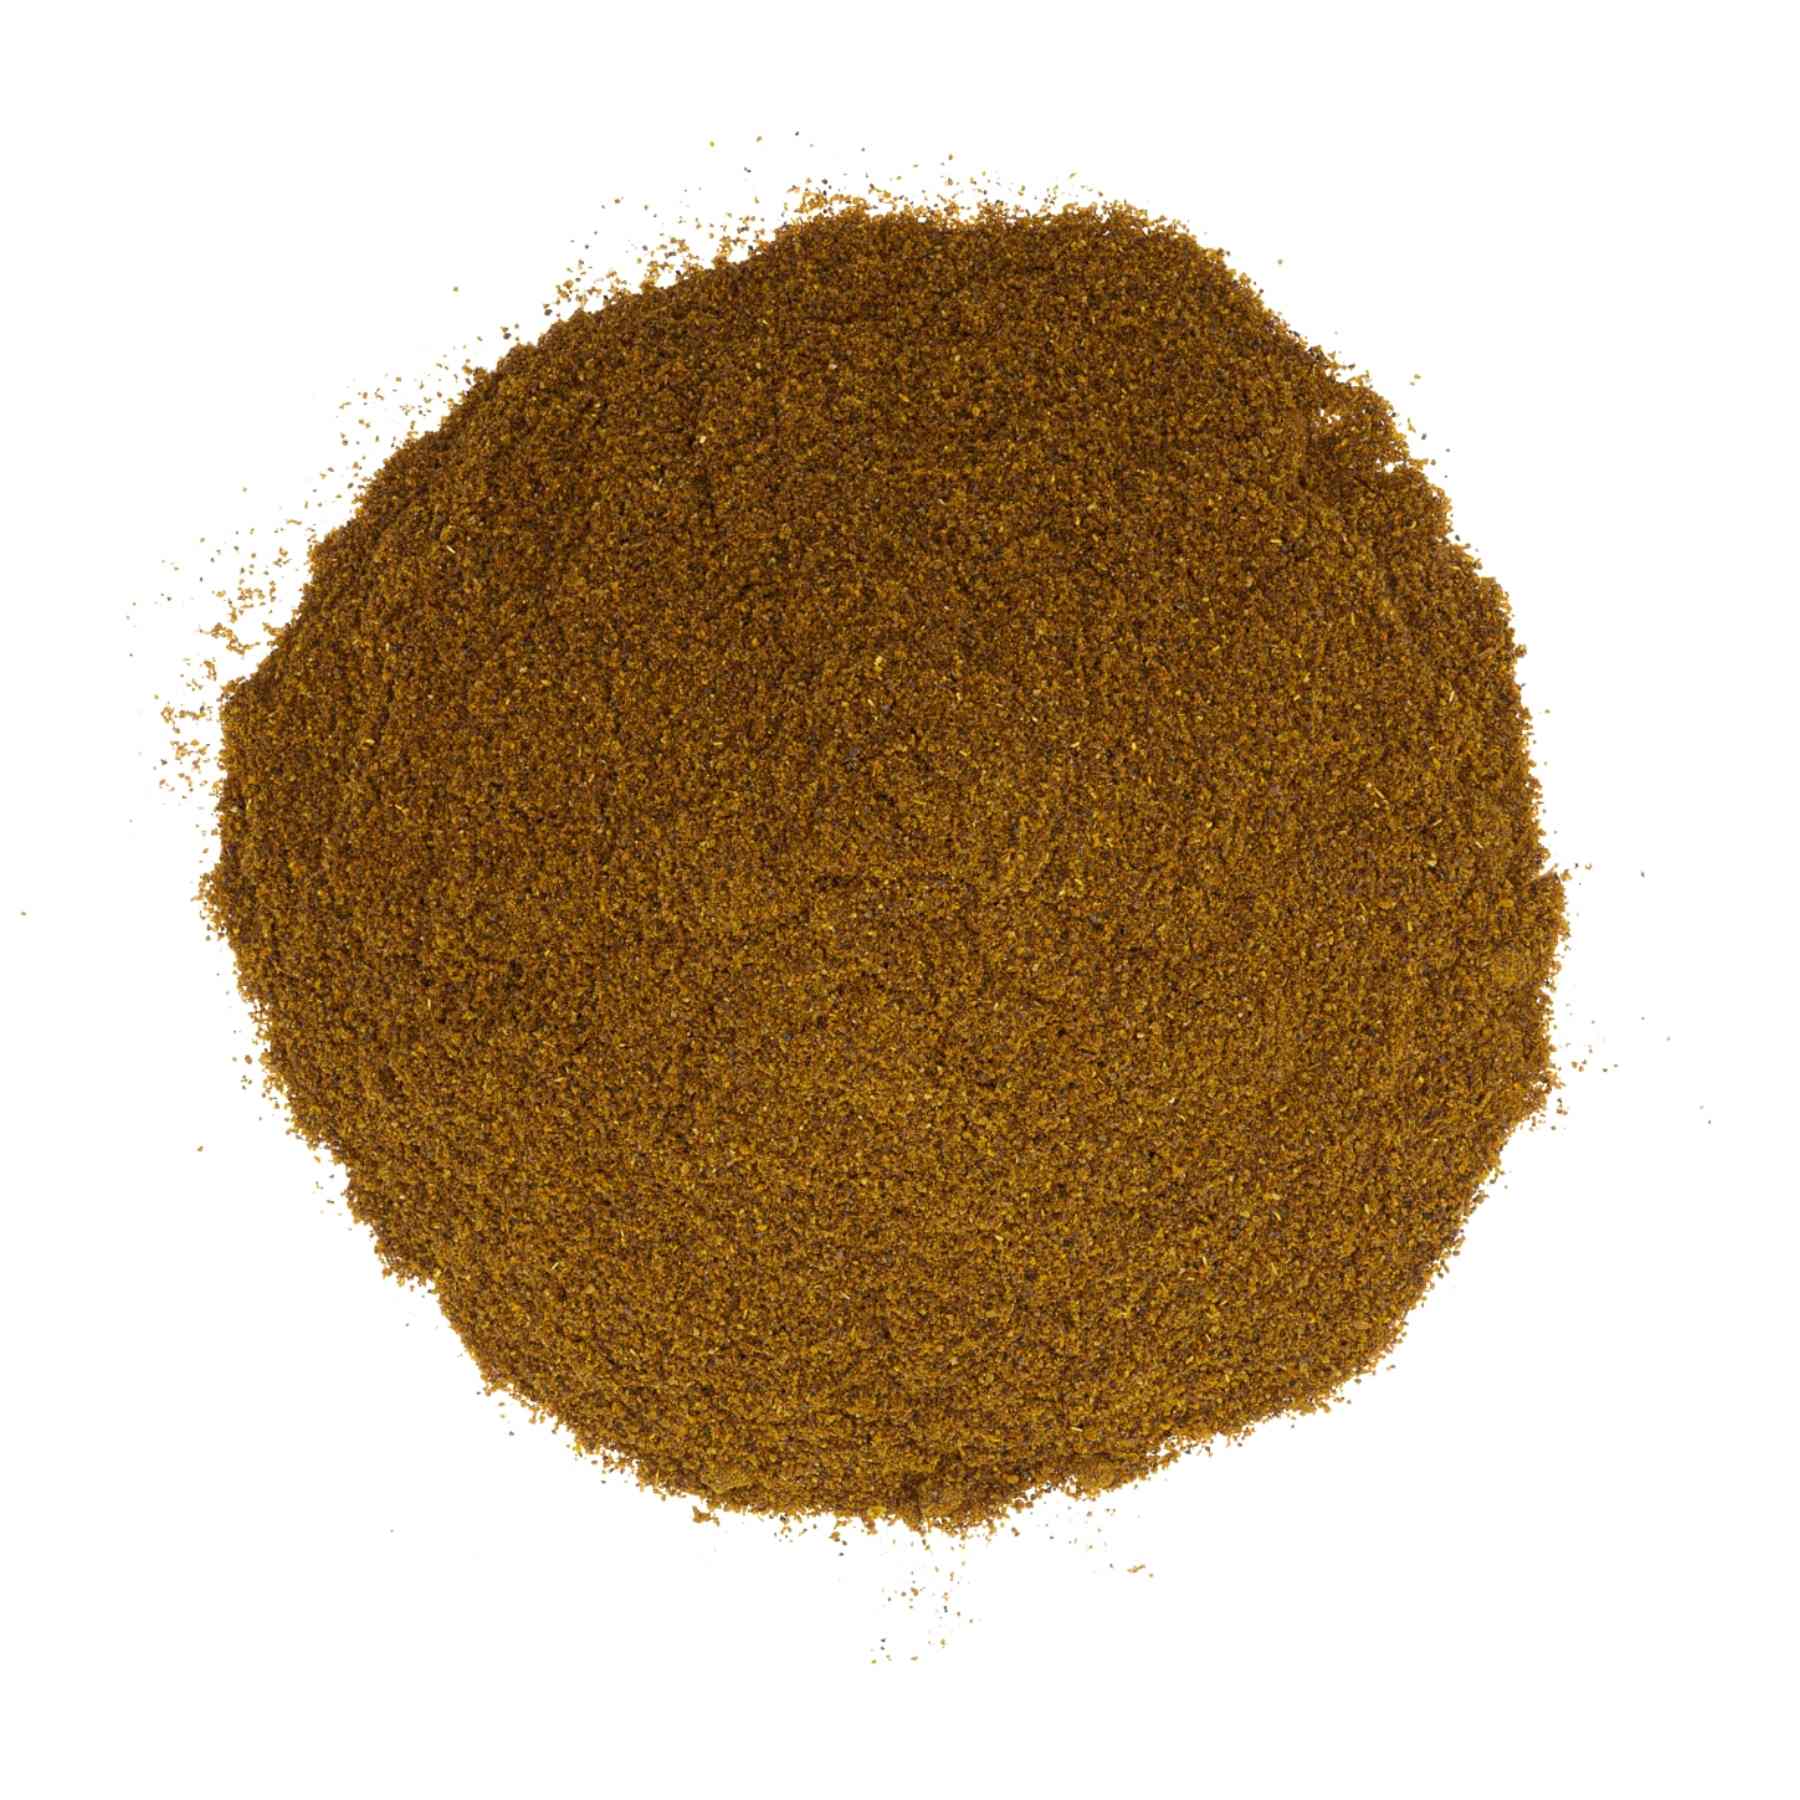 Habanero Chili Powder Seasonings & Spices Slofoodgroup 1 oz 